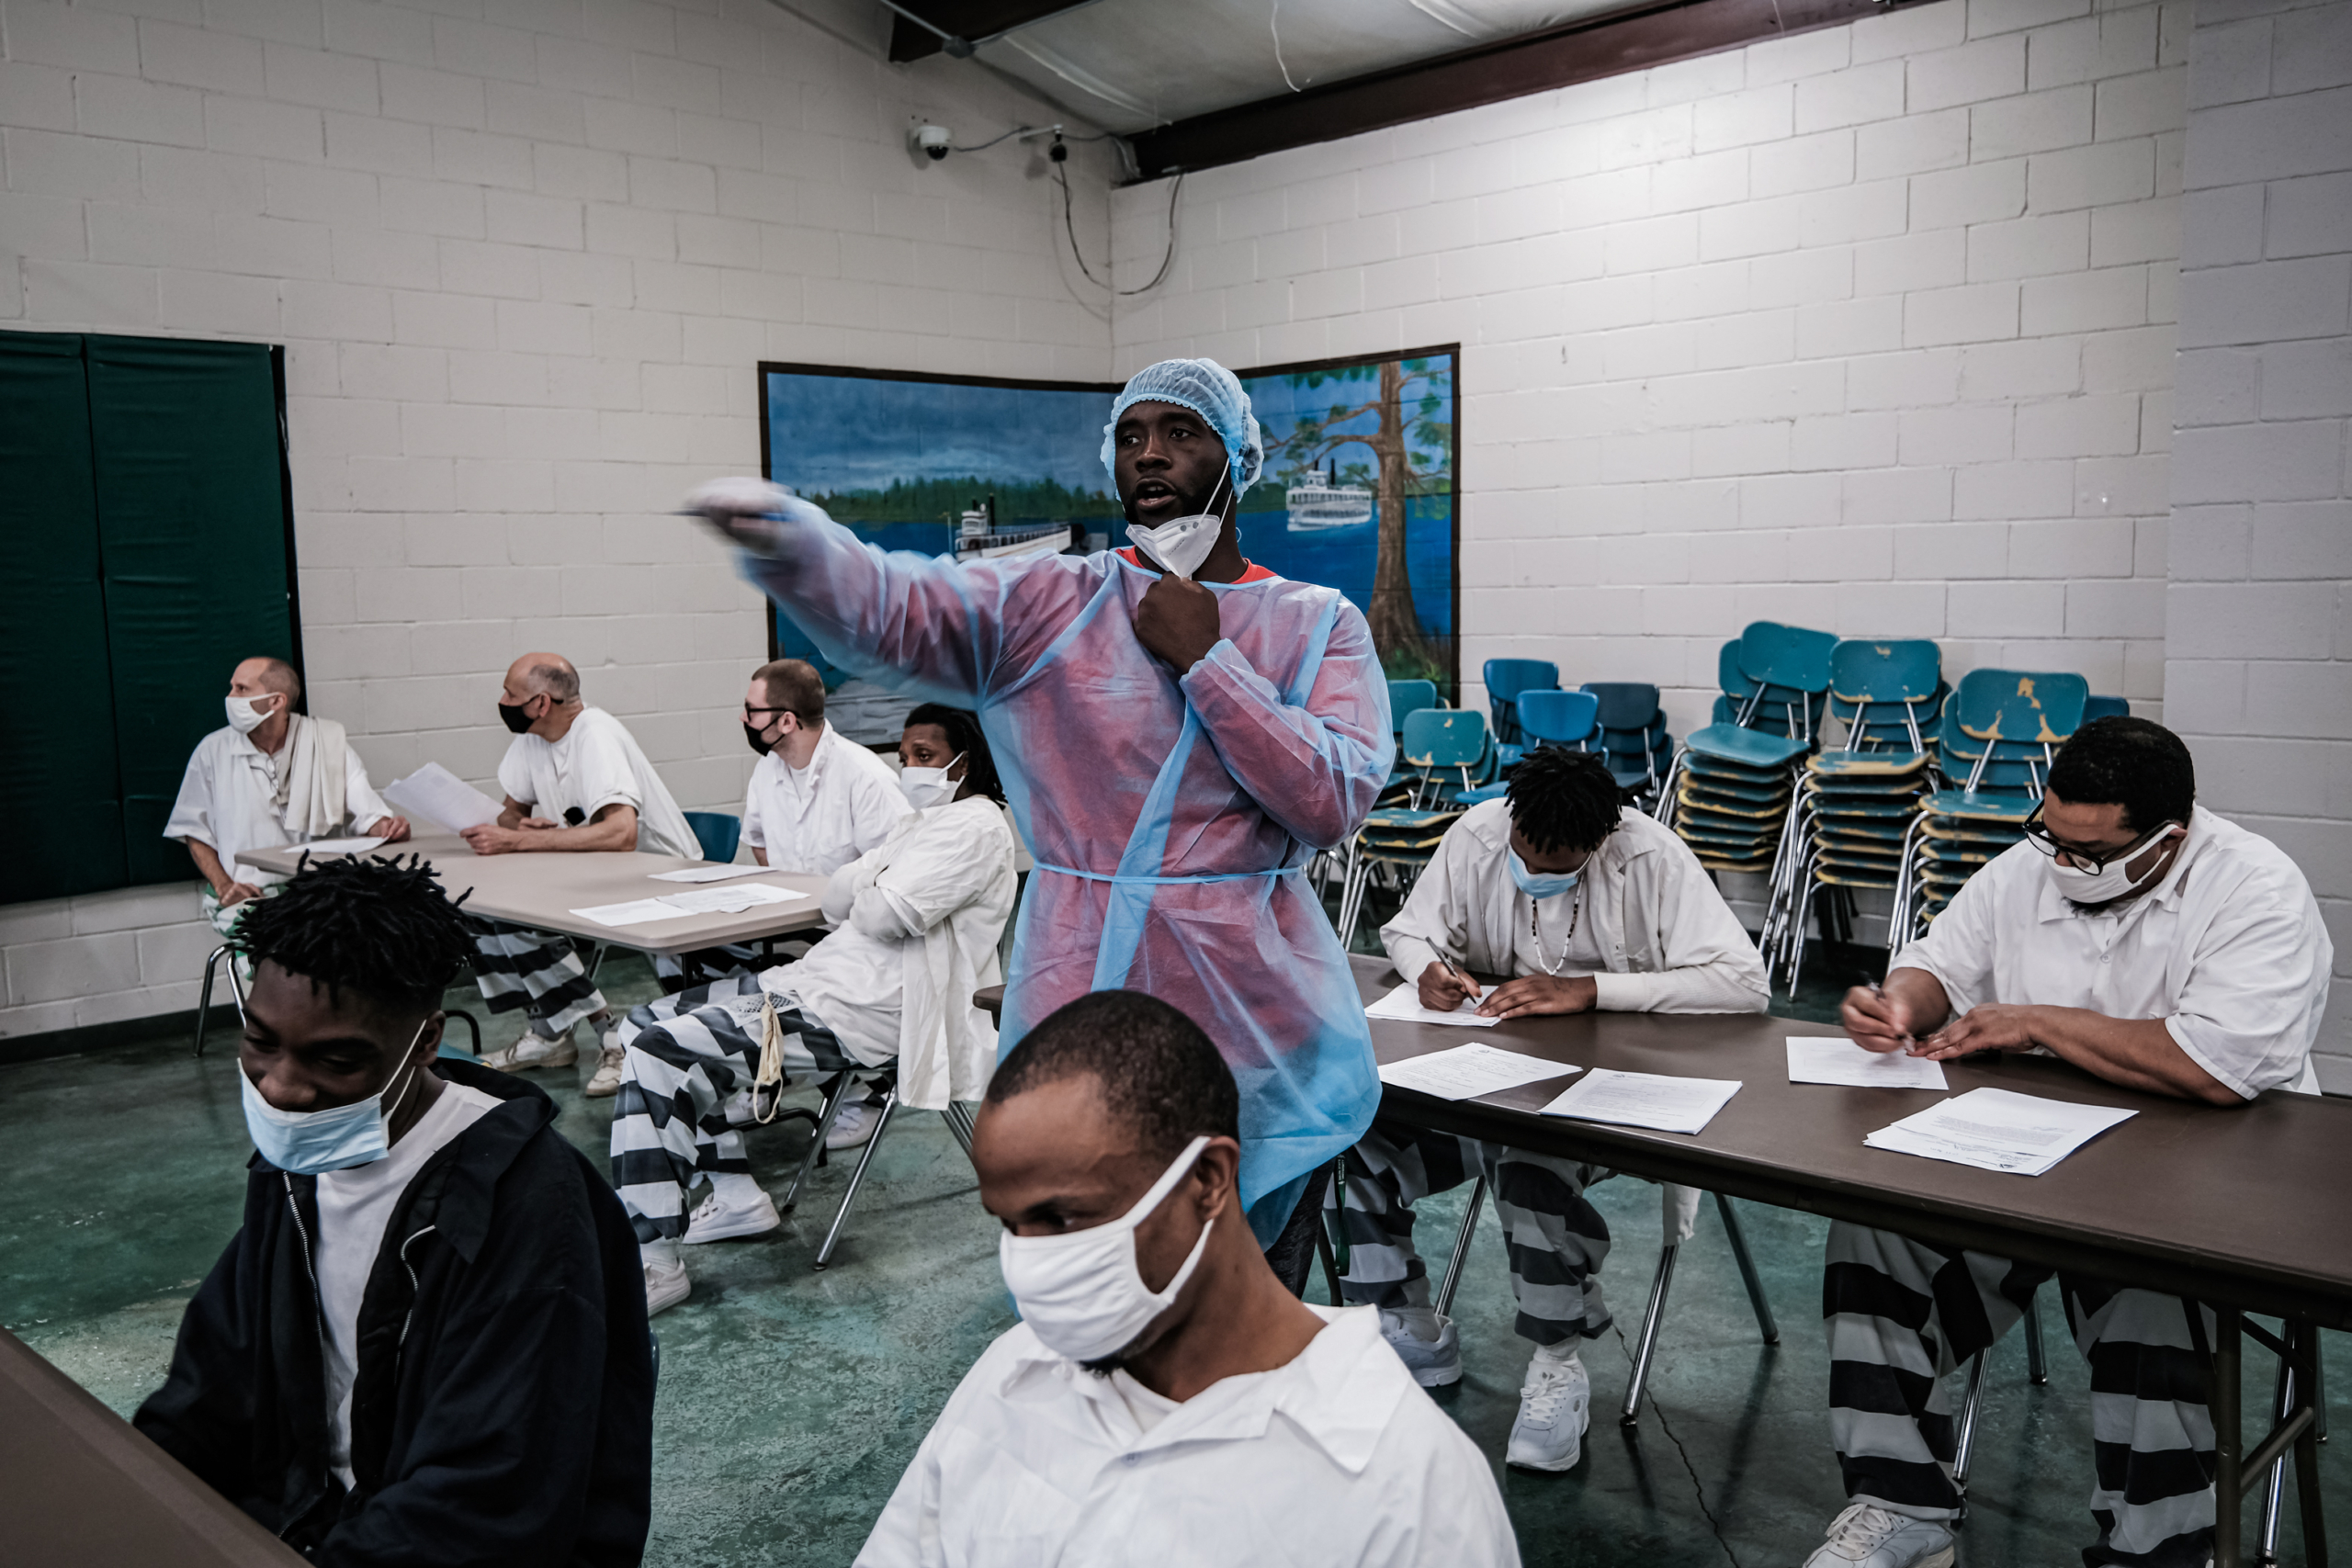 Các tù nhân điền giấy tờ trước khi được chích một mũi vaccine ngừa COVID-19 ở Cleveland, Mississippi, vào ngày 28/04/2021. (Ảnh: Spencer Platt/Getty Images)